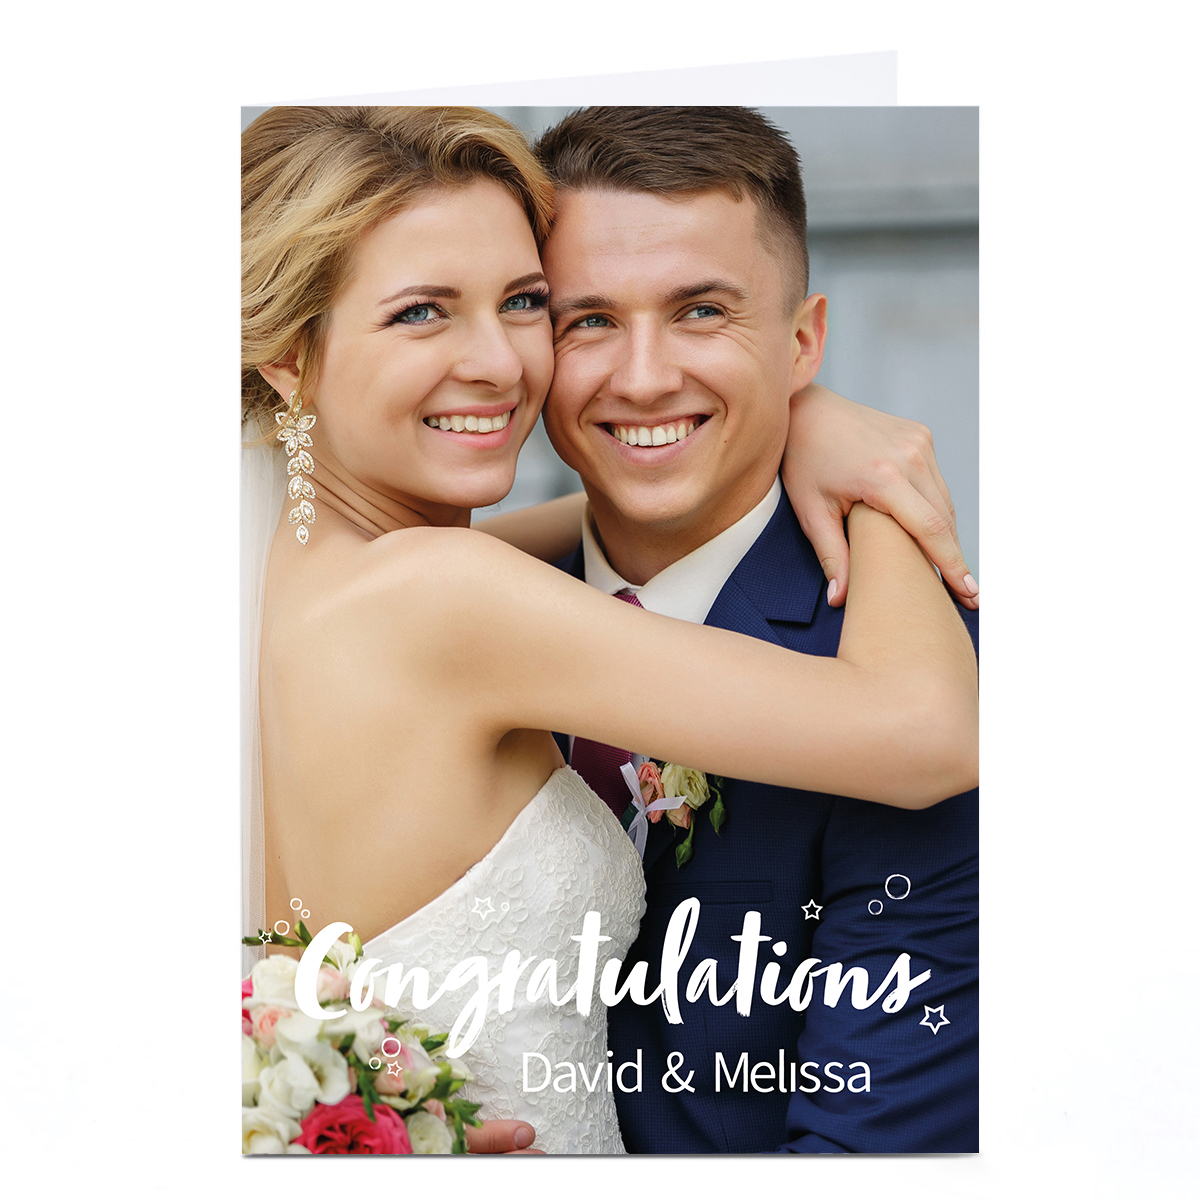 Photo Congratulations Card - Couple & Names